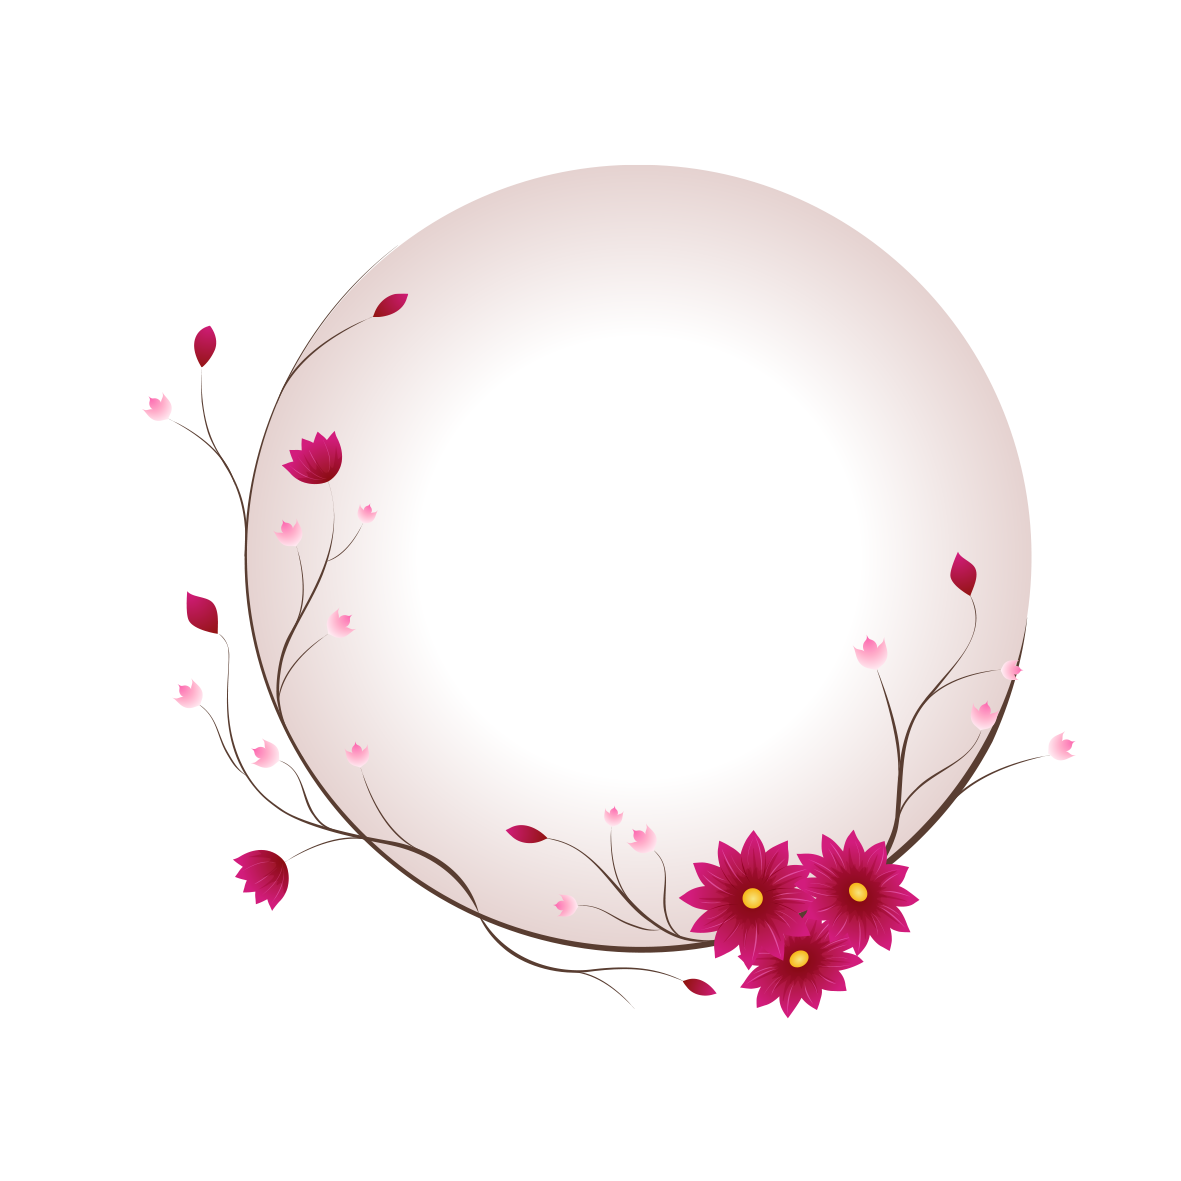 حباب دایره ای و نقاشی گل زیبا دور بریده شده مناسب برای پروفایل